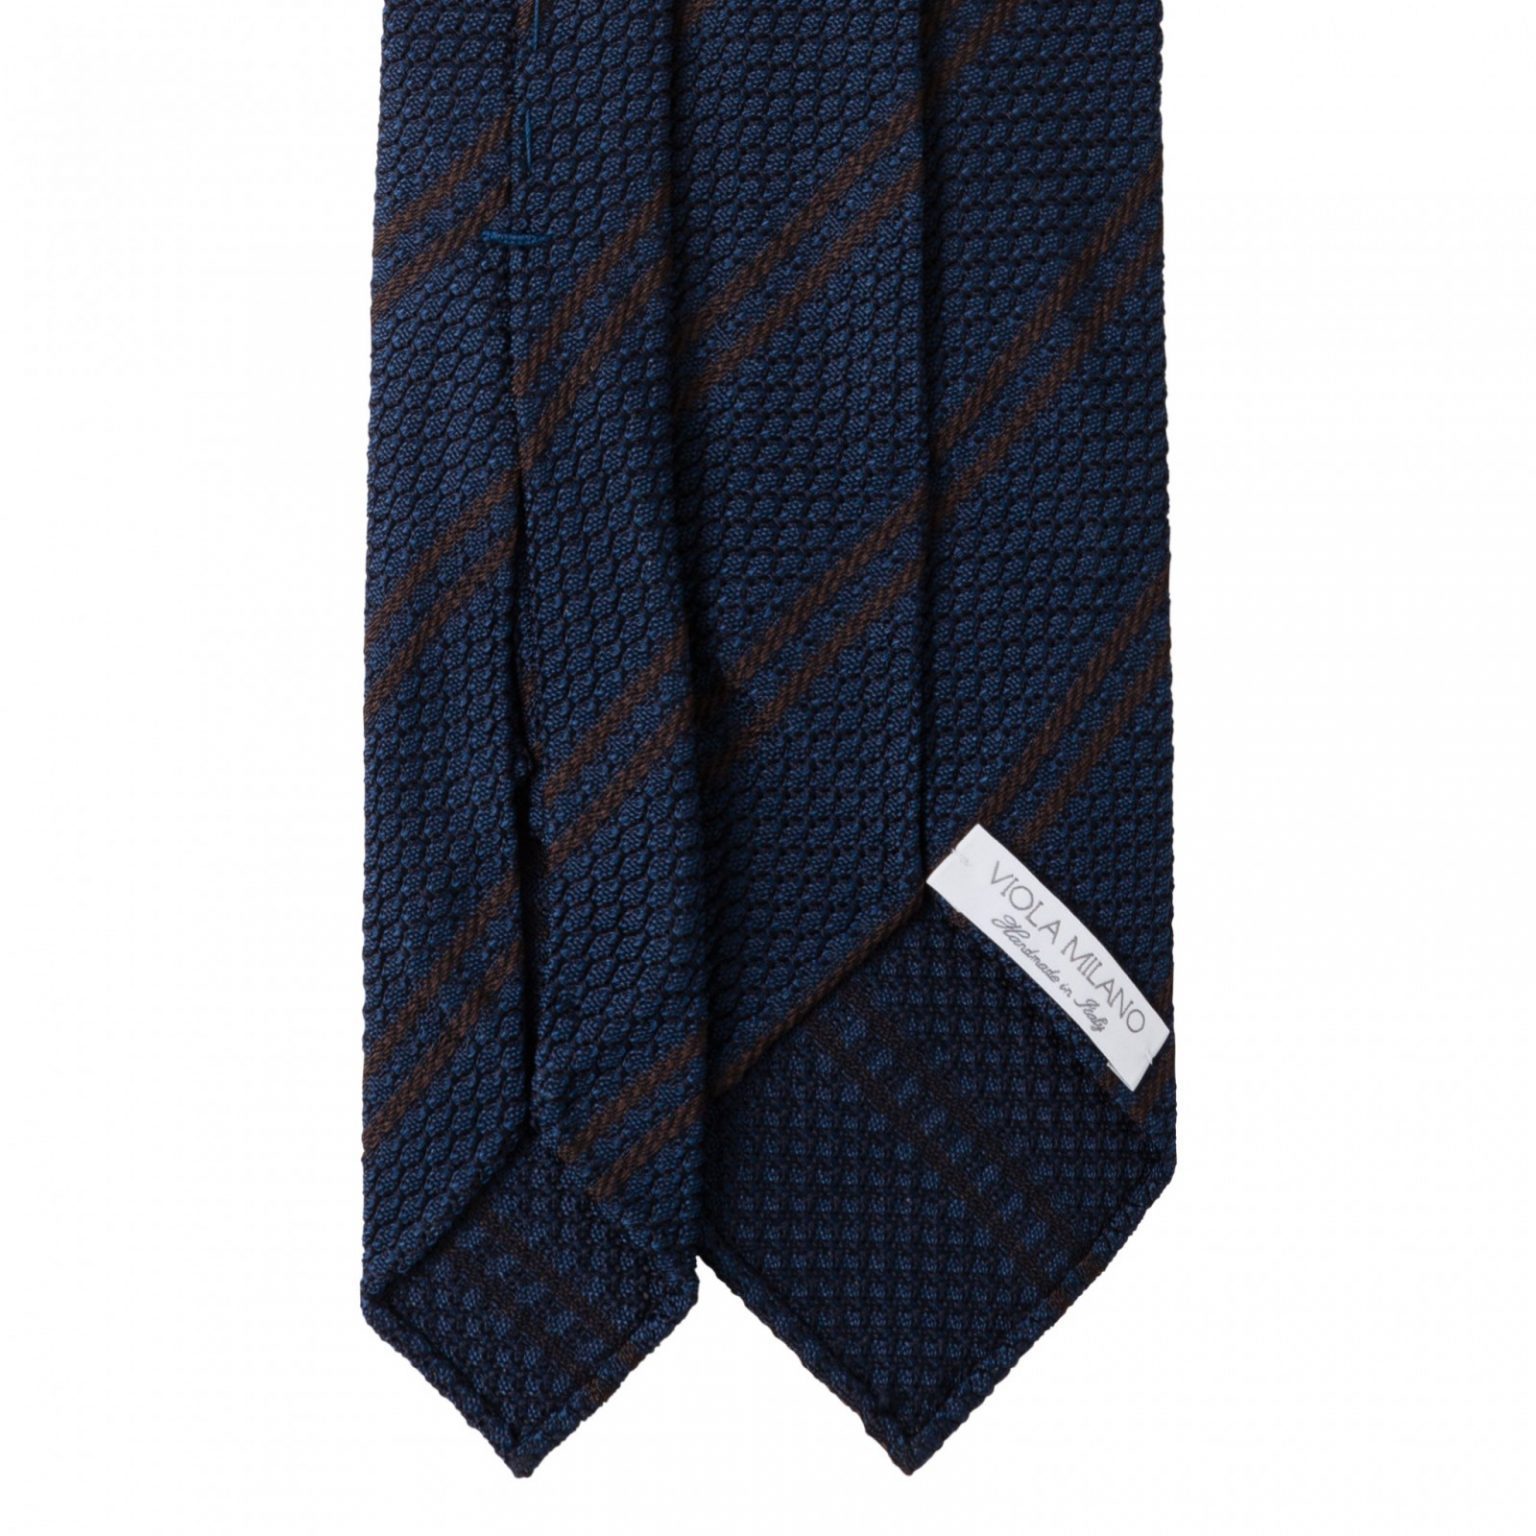 Classic Stripe 3-fold Grenadine Tie - Navy/Brown - Viola Milano